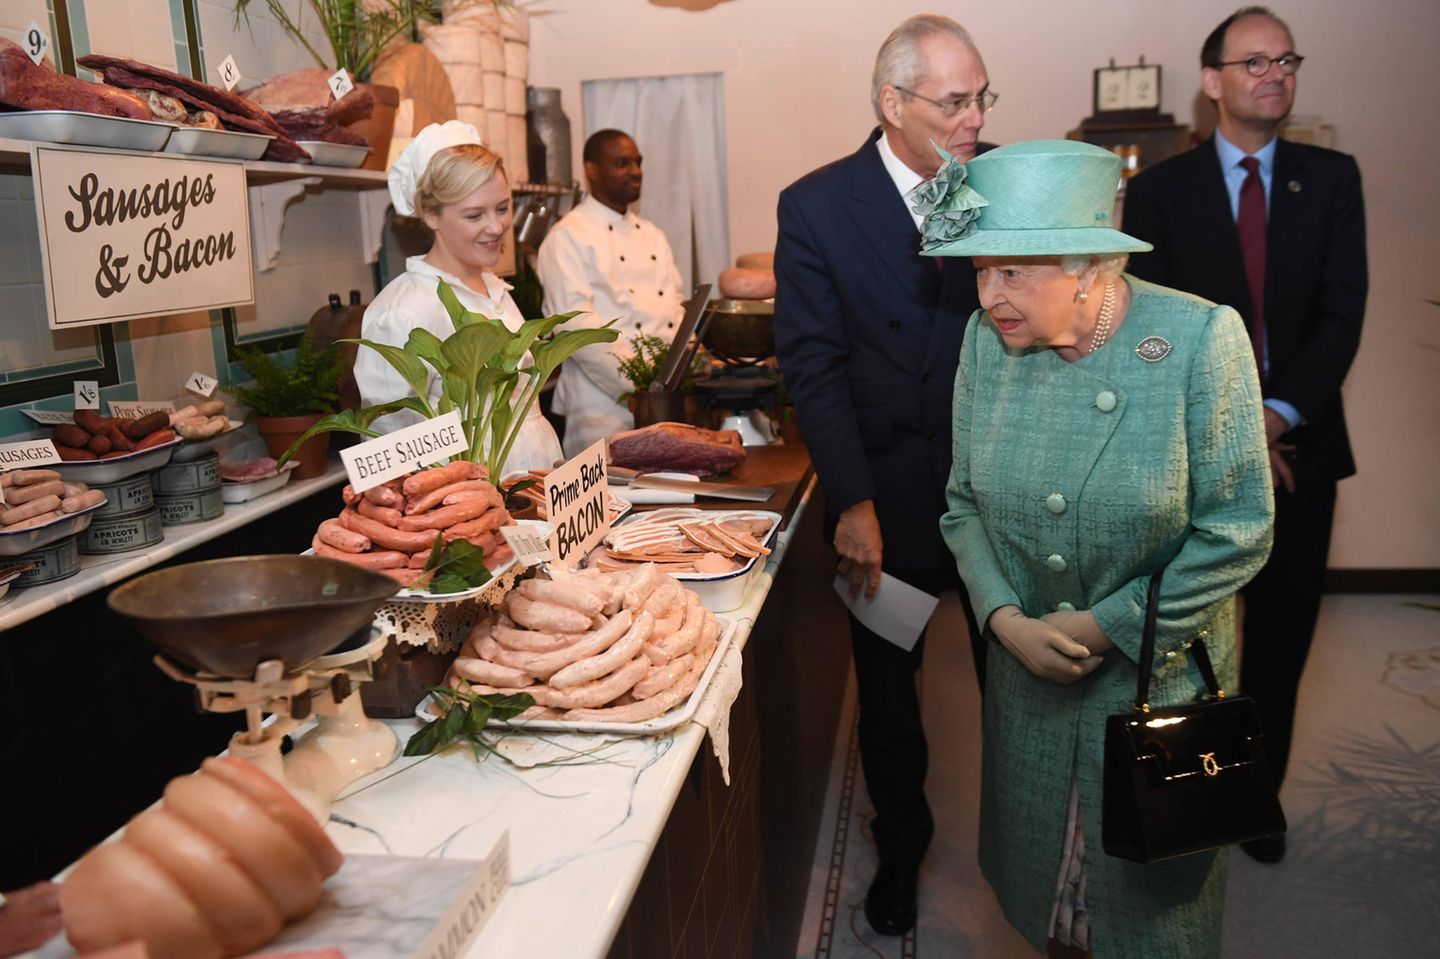 So sehen Supermarktketten heute nicht mehr aus. Queen Elizabeth begutachtet trotzdem interessiert die Lebensmittelauswahl, die Lord Sainsbury und seine Ehefrau für den hohen Besuch ausgewählt haben.